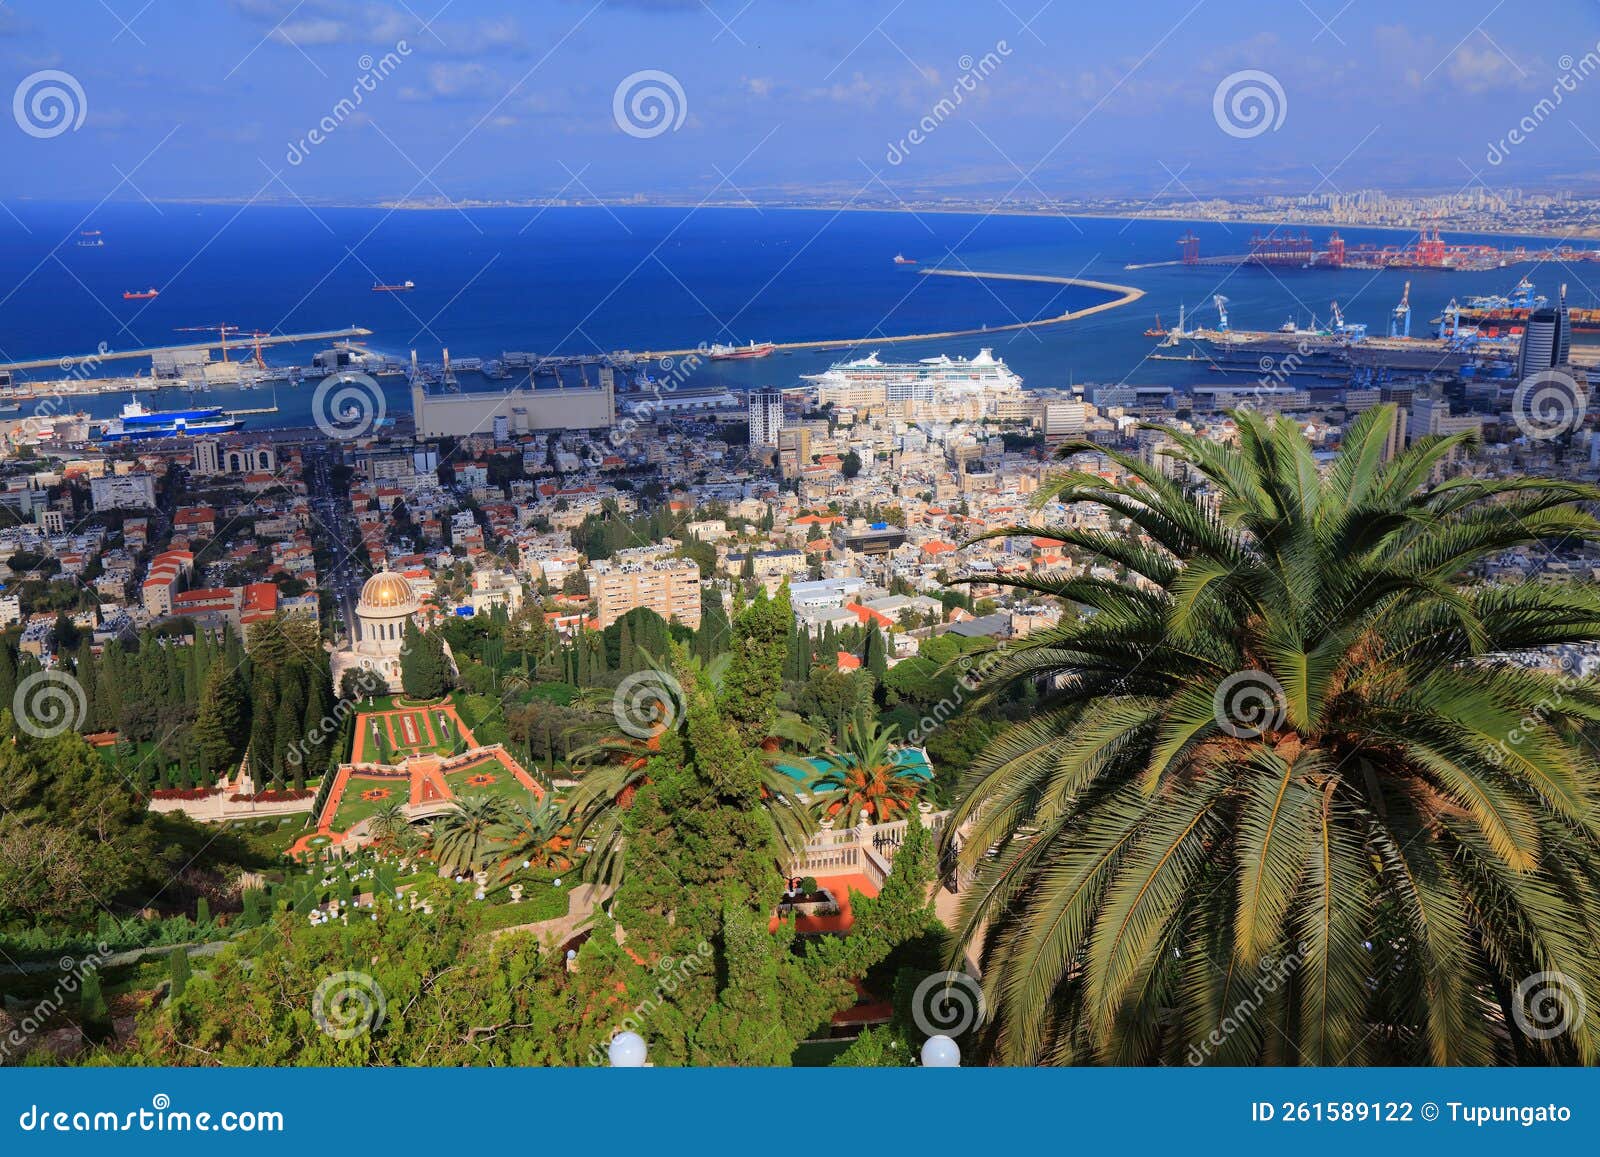 haifa city, israel - baha`i gardens